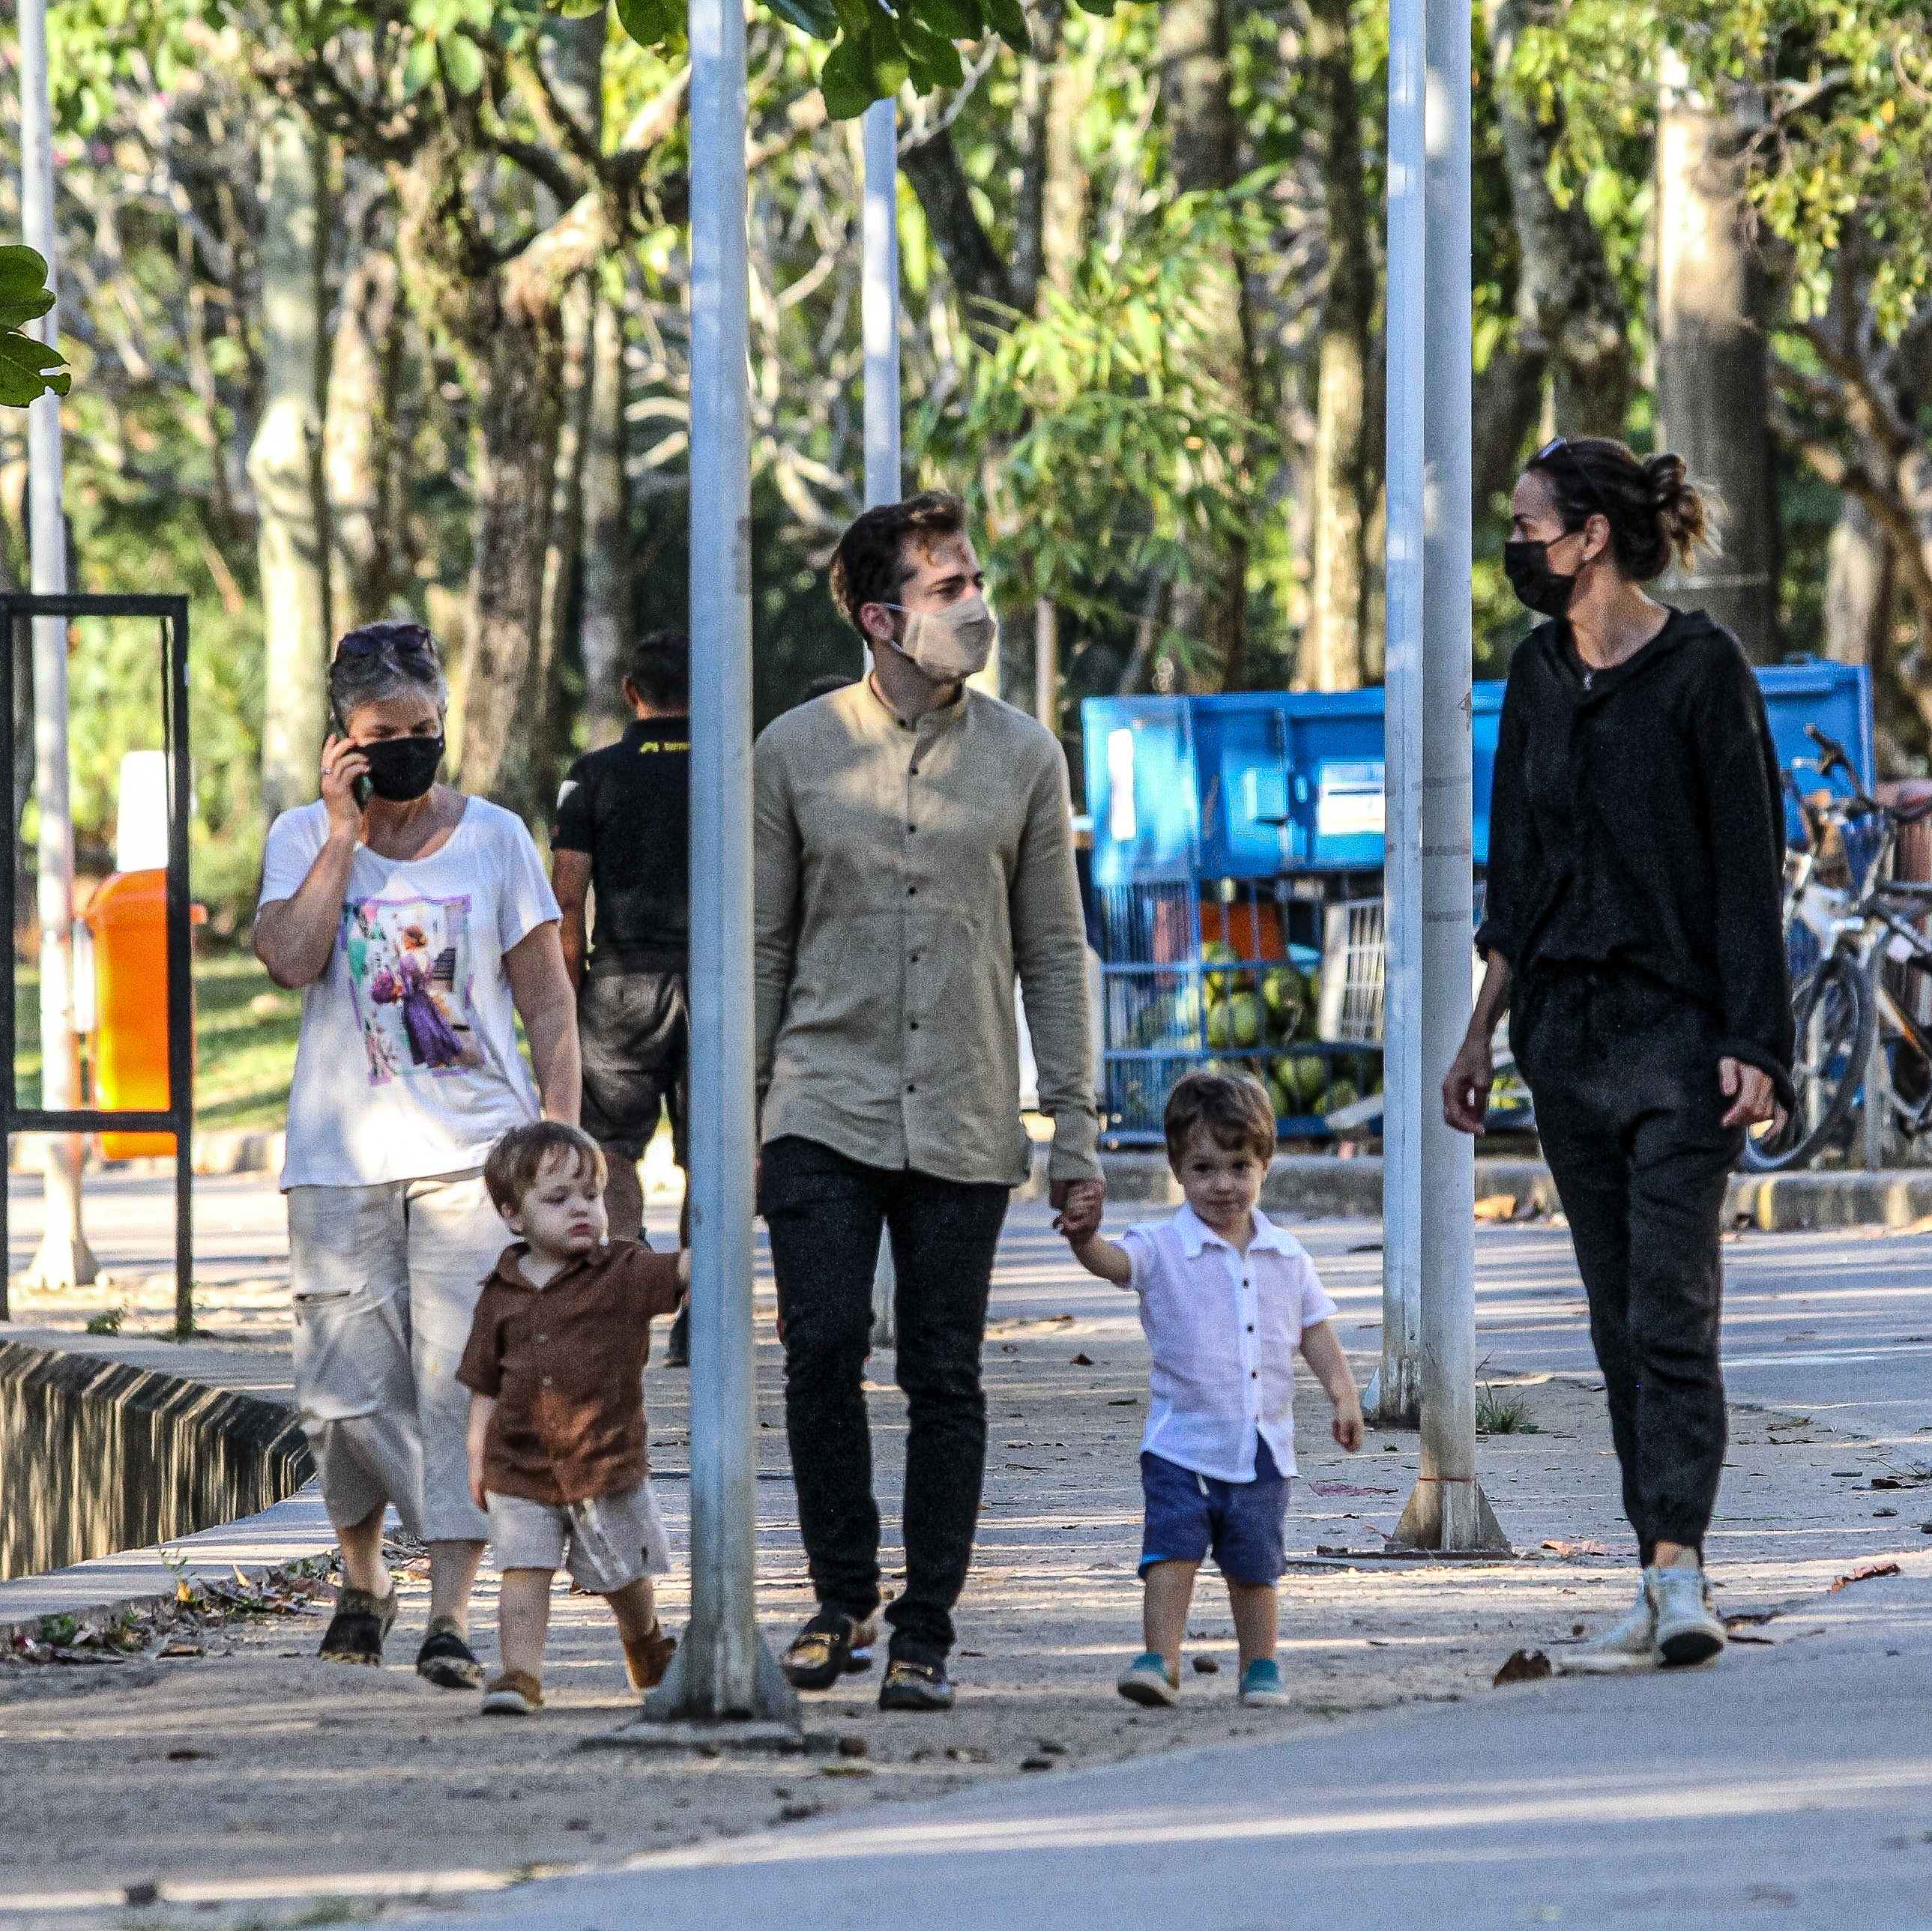 Thales Bretas, Susana Garcia e filhos de Paulo Gustavo